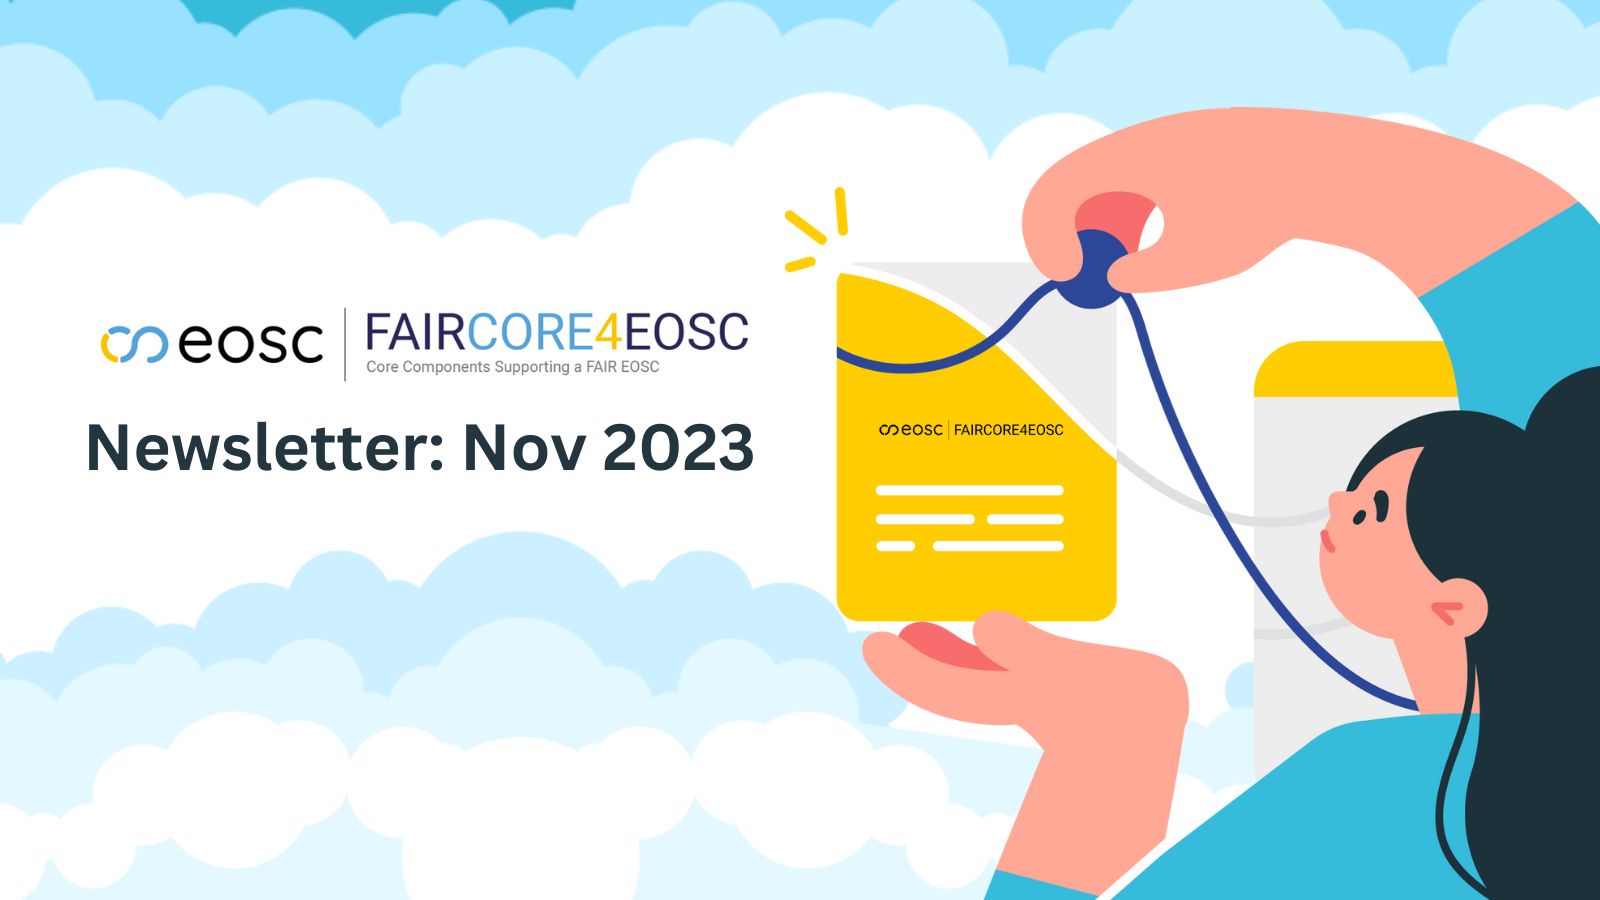 FAIRCORE4EOSC November 2023 Newsletter